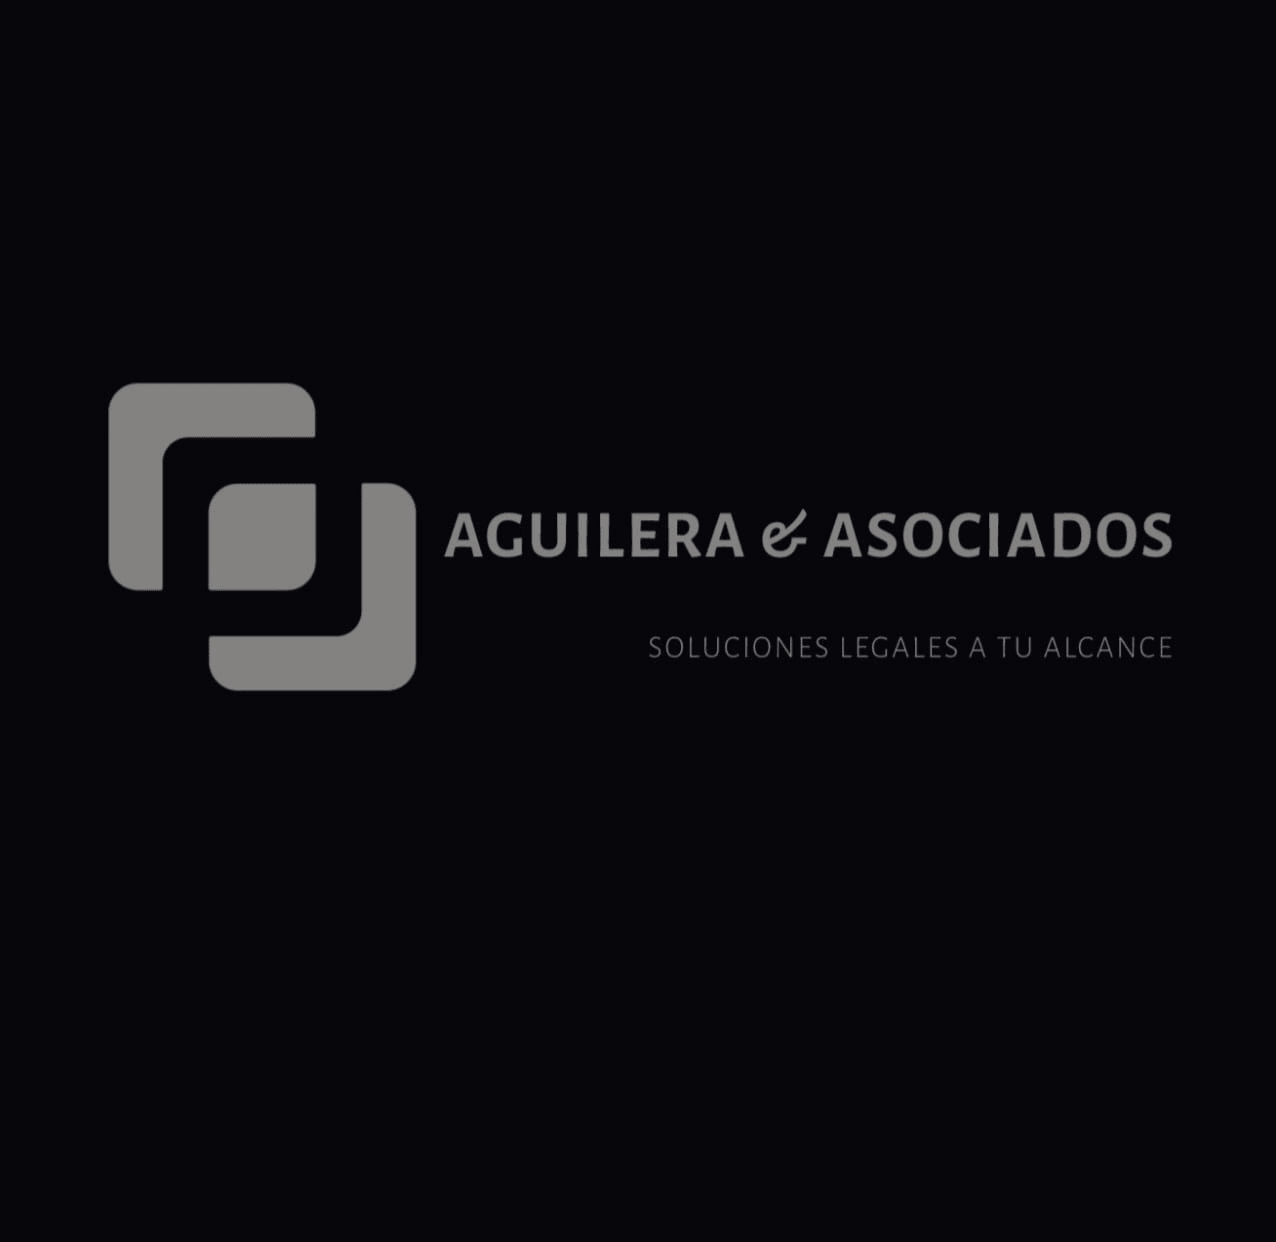 Aguilera & Asociados